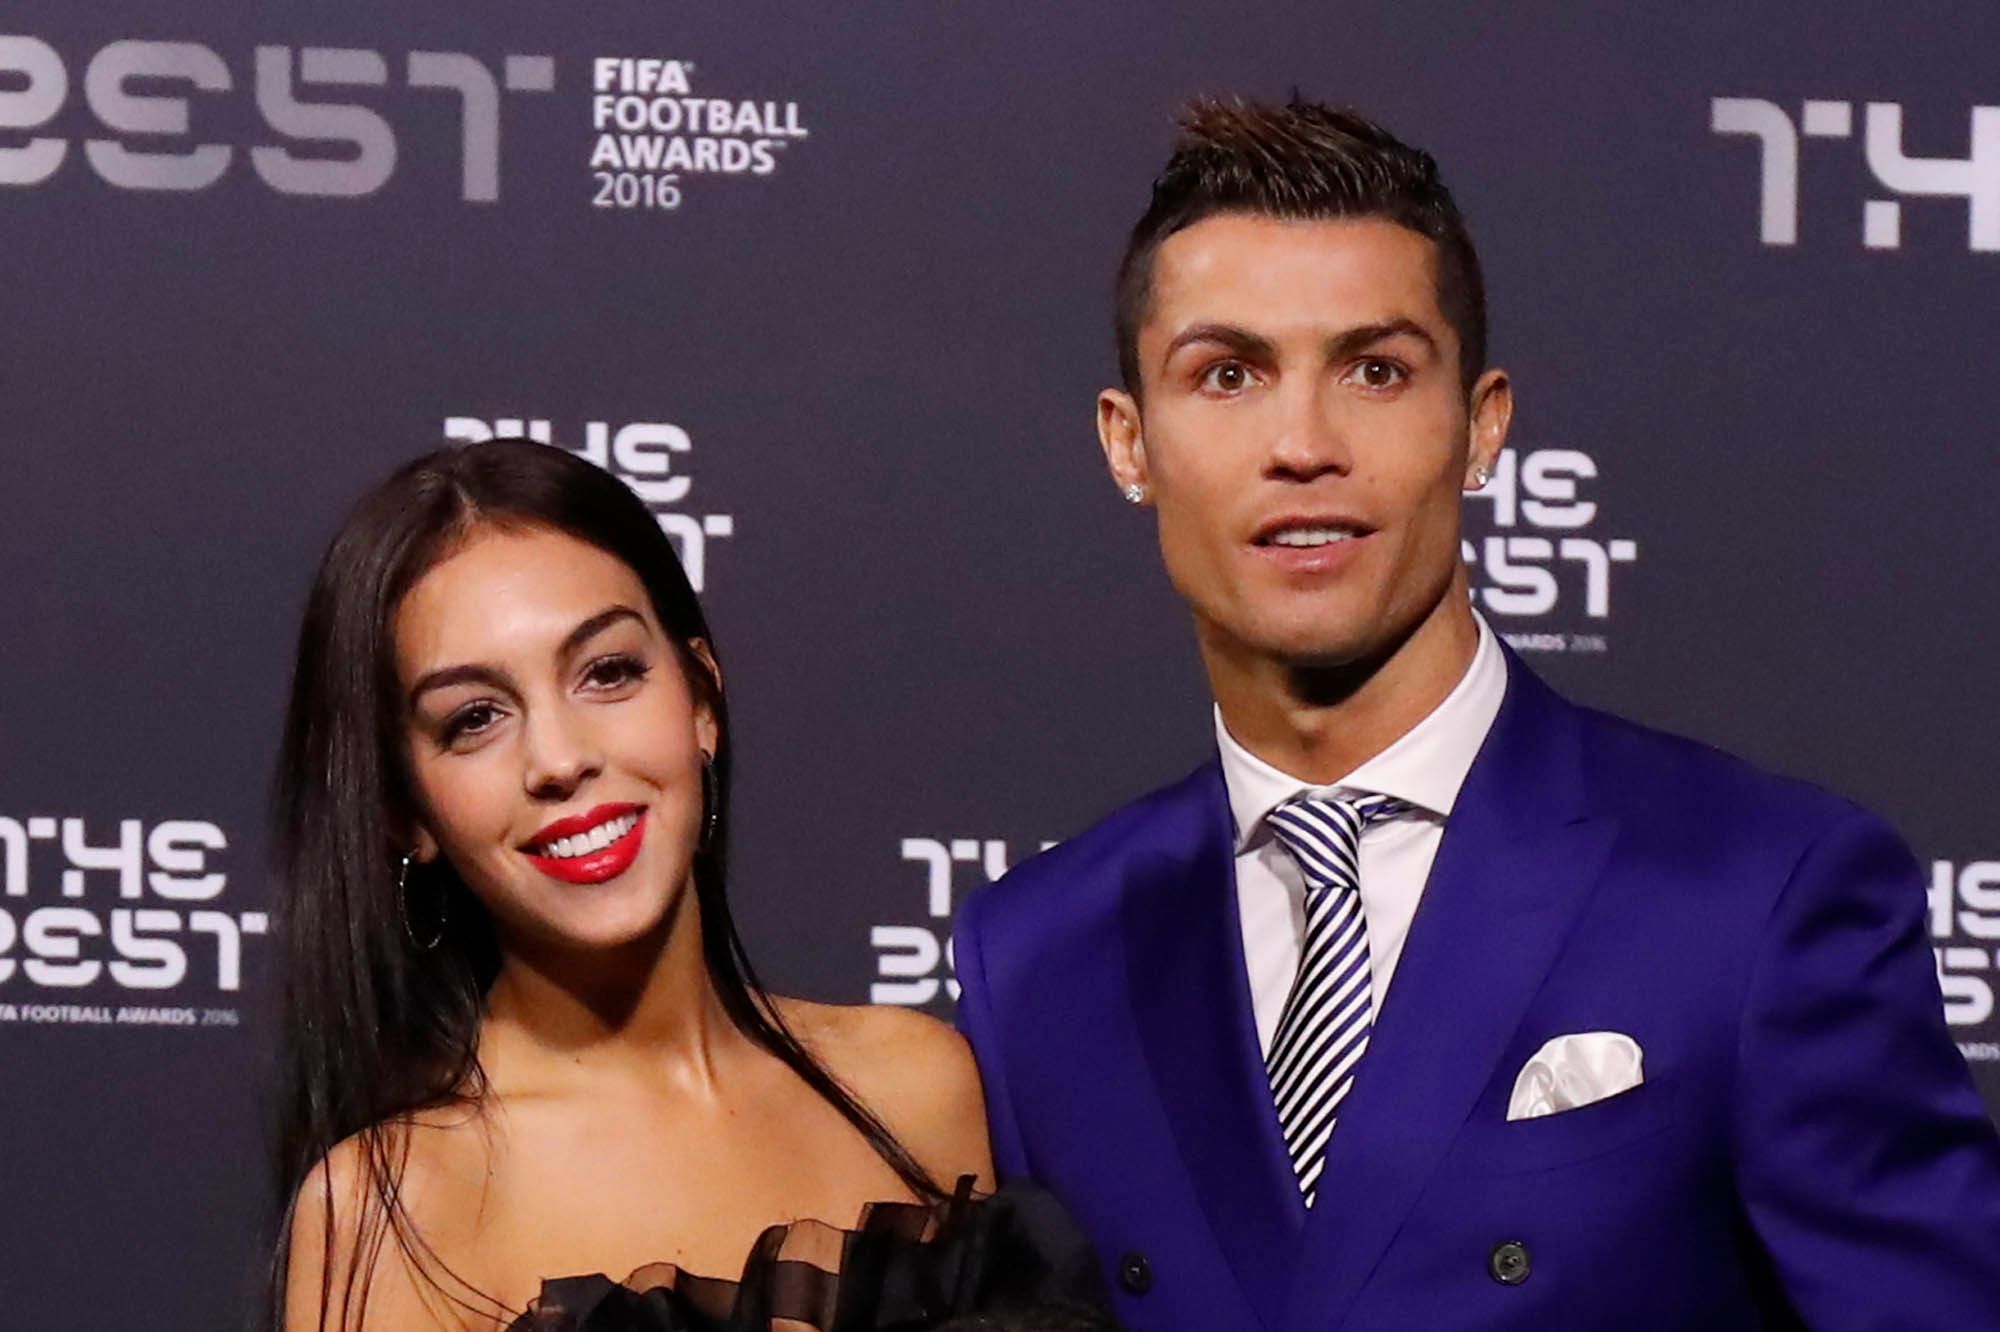 La raison pour laquelle Cristiano Ronaldo n’ira pas à la cérémonie du Ballon d’Or